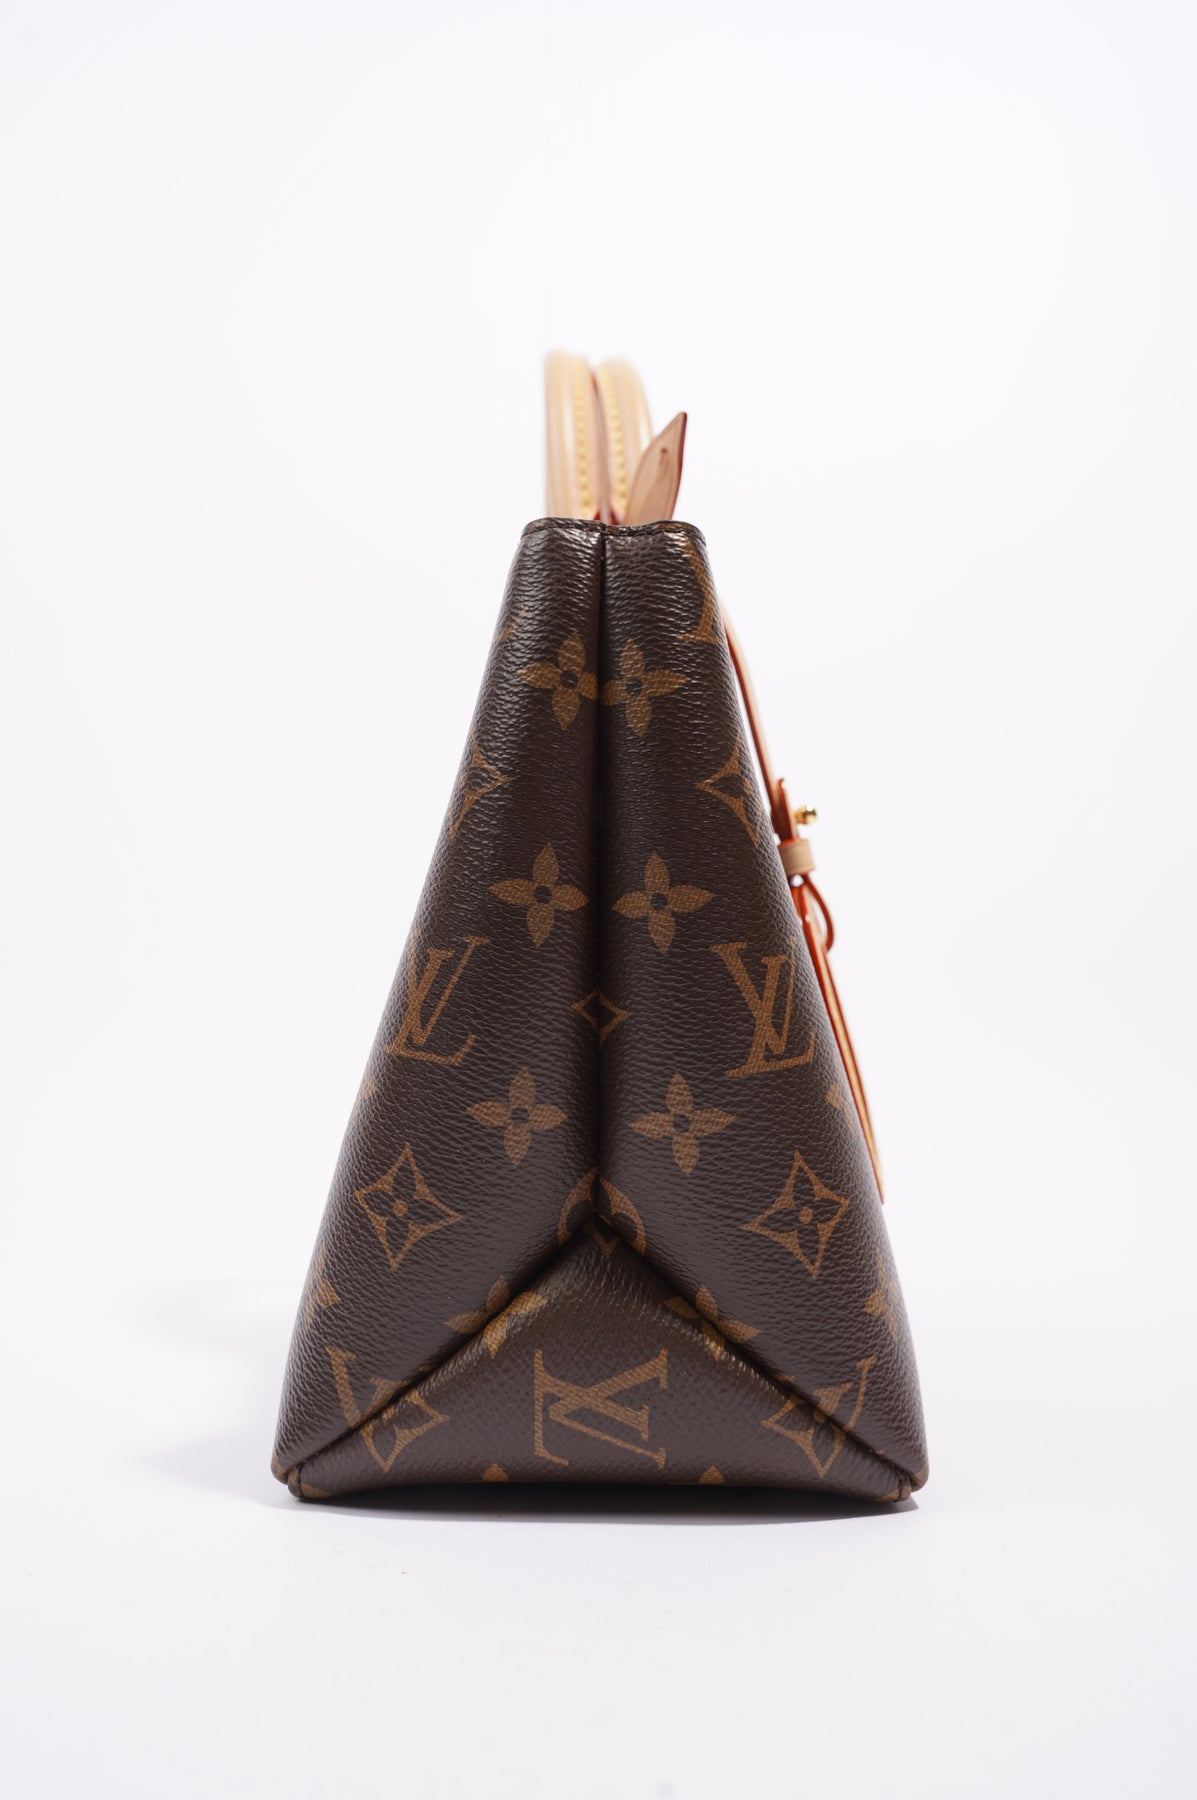 Louis Vuitton Petit Palais Monogram Canvas Shoulder Bag Brown